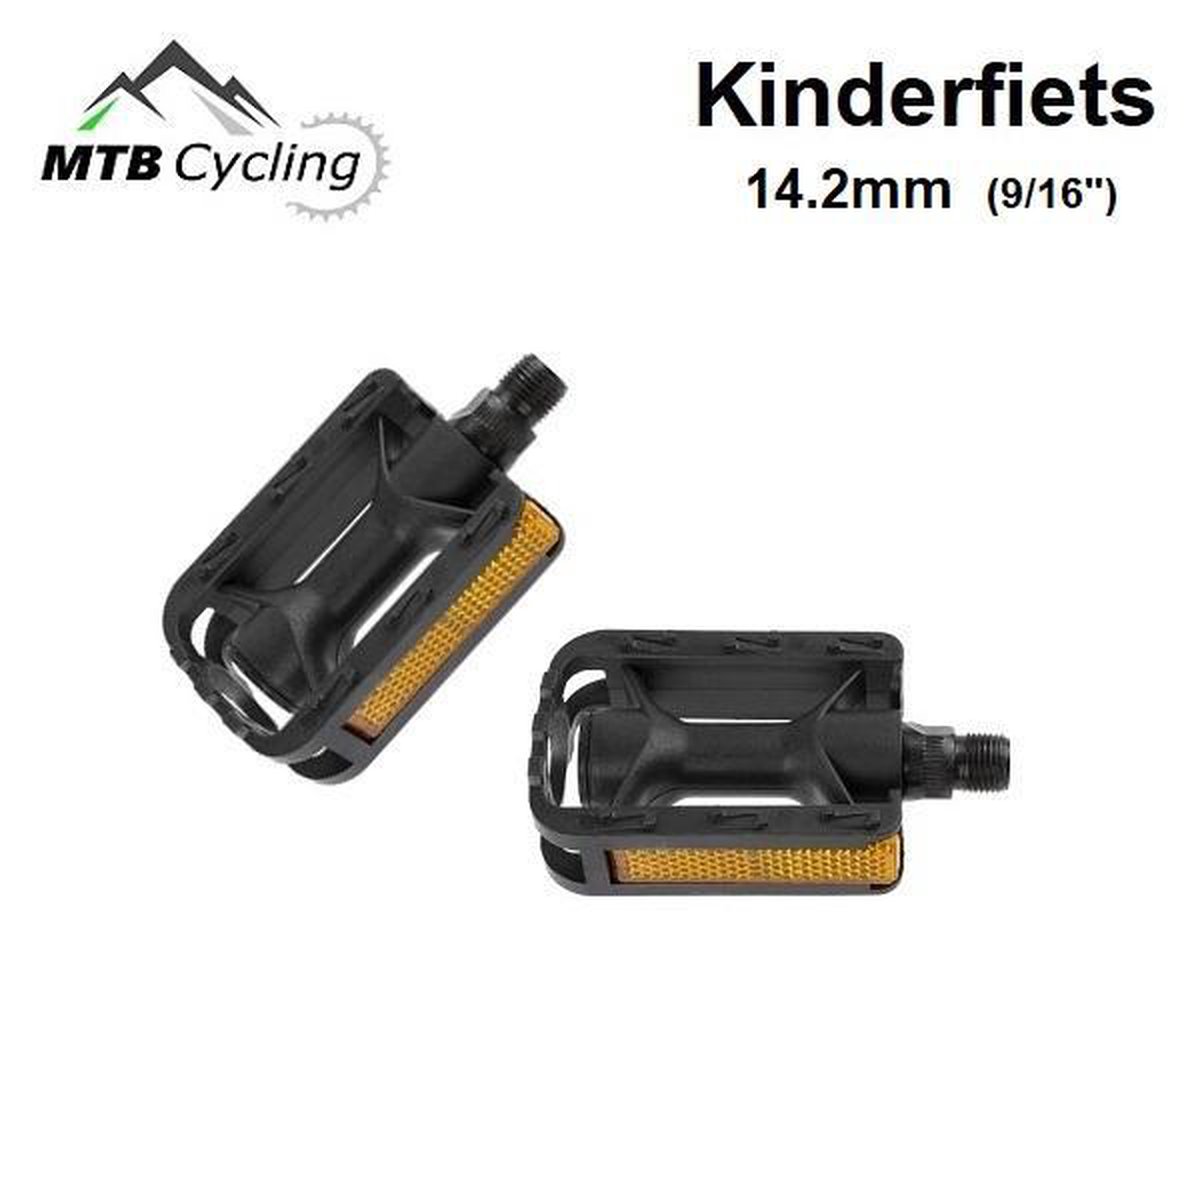 9/16 inch Kinderfiets pedalen - Anti slip - Trappers voor kinder fiets met  reflector -... | bol.